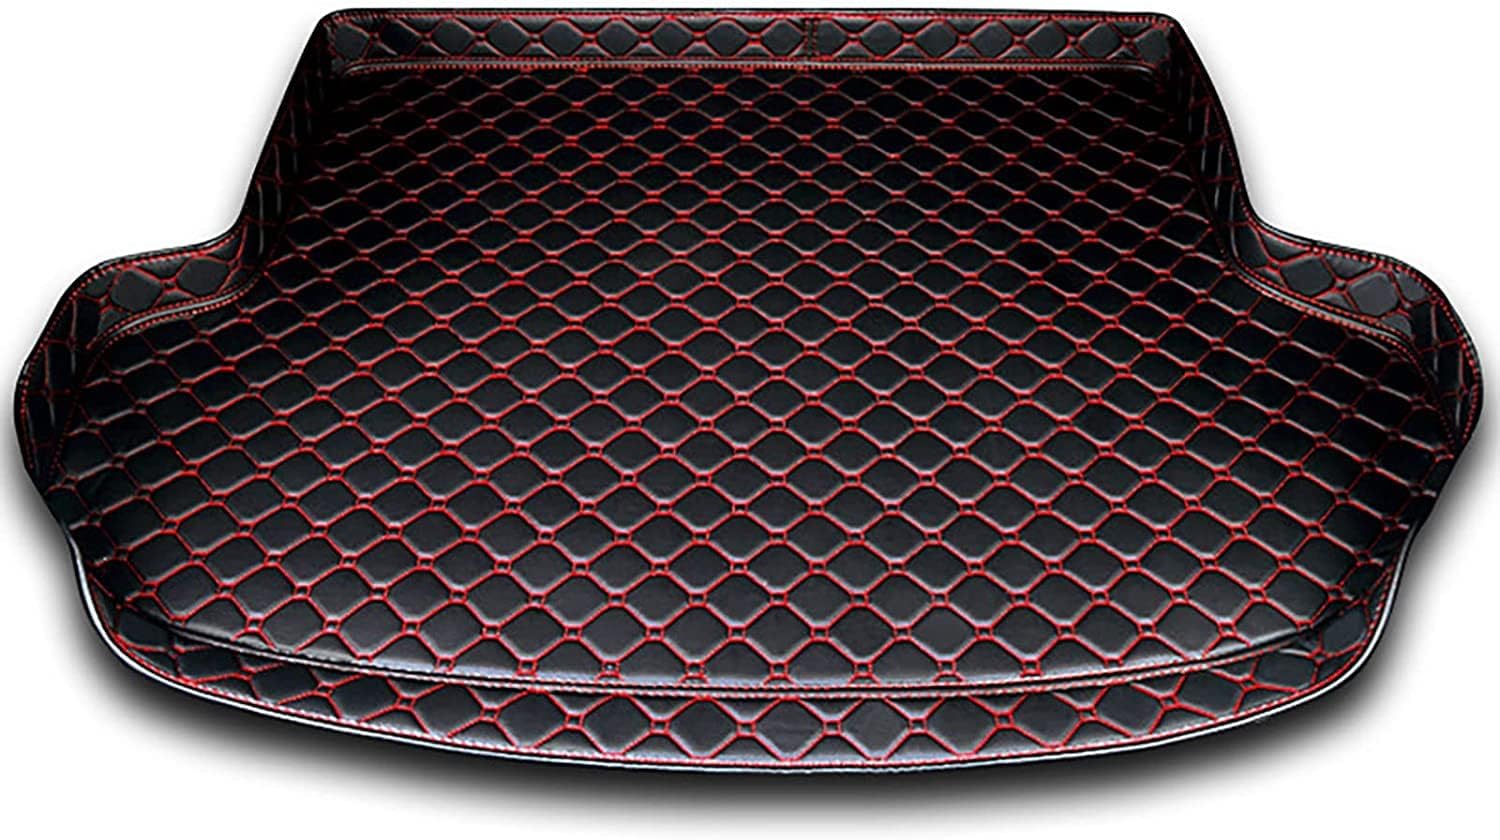 Auto Leder Kofferraummatten für Hyundai i30 Kombi 2019- Kofferraum Schutzmatte Kofferraumwanne Teppich rutschfest Staubdicht ZubehöR.,C-Black Red von UNGOOR